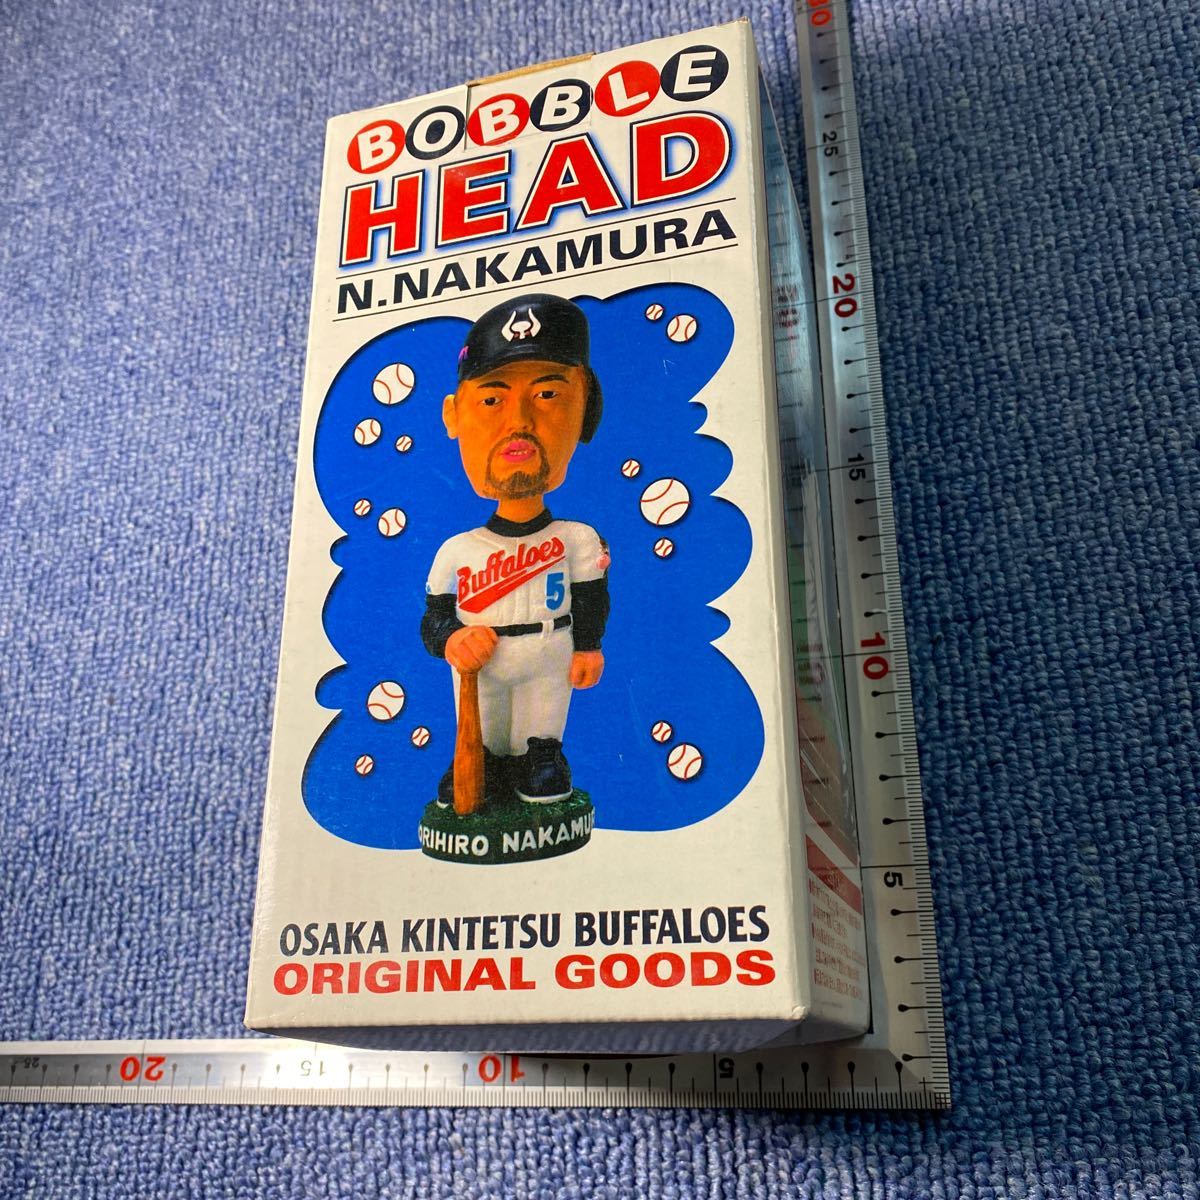  Osaka близко металлический Buffaloes Nakamura .. Home Bob ru head фигурка не продается товары коллекция 